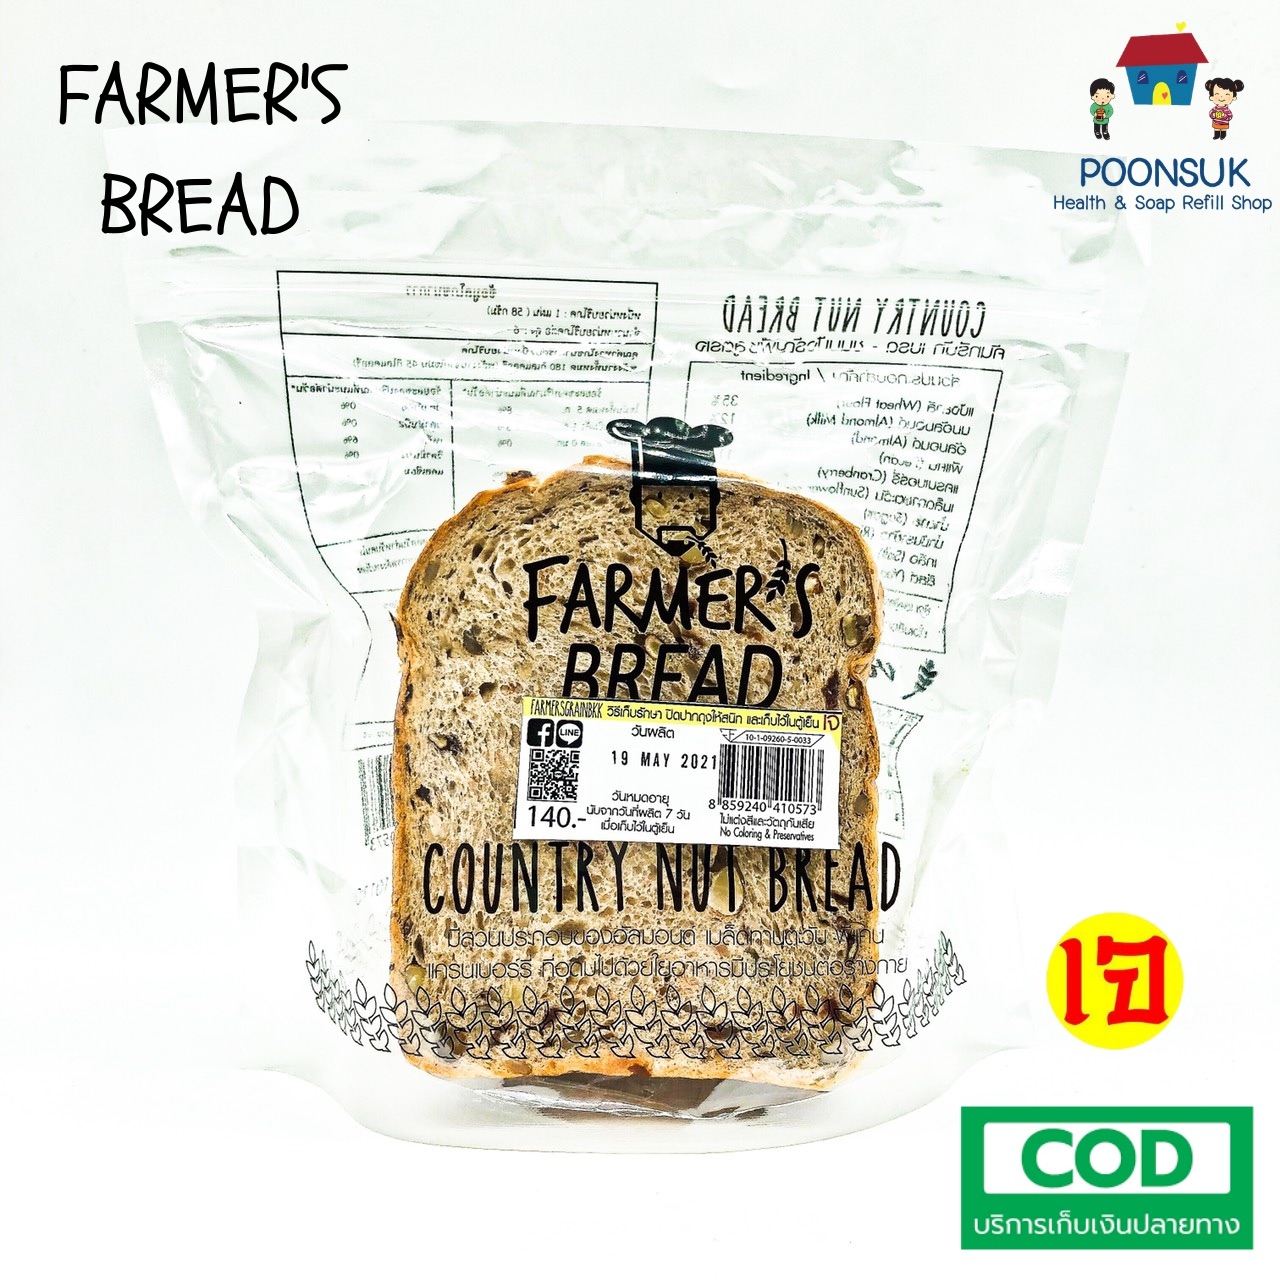 FARMER'S BREAD country nut bread ฟาร์มเมอร์ คันทรีนัท เบรด ขนมปังแถว ขนมปังแผ่น ขนมปังธัญพืช สูตรเจ 300g (6แผ่น)